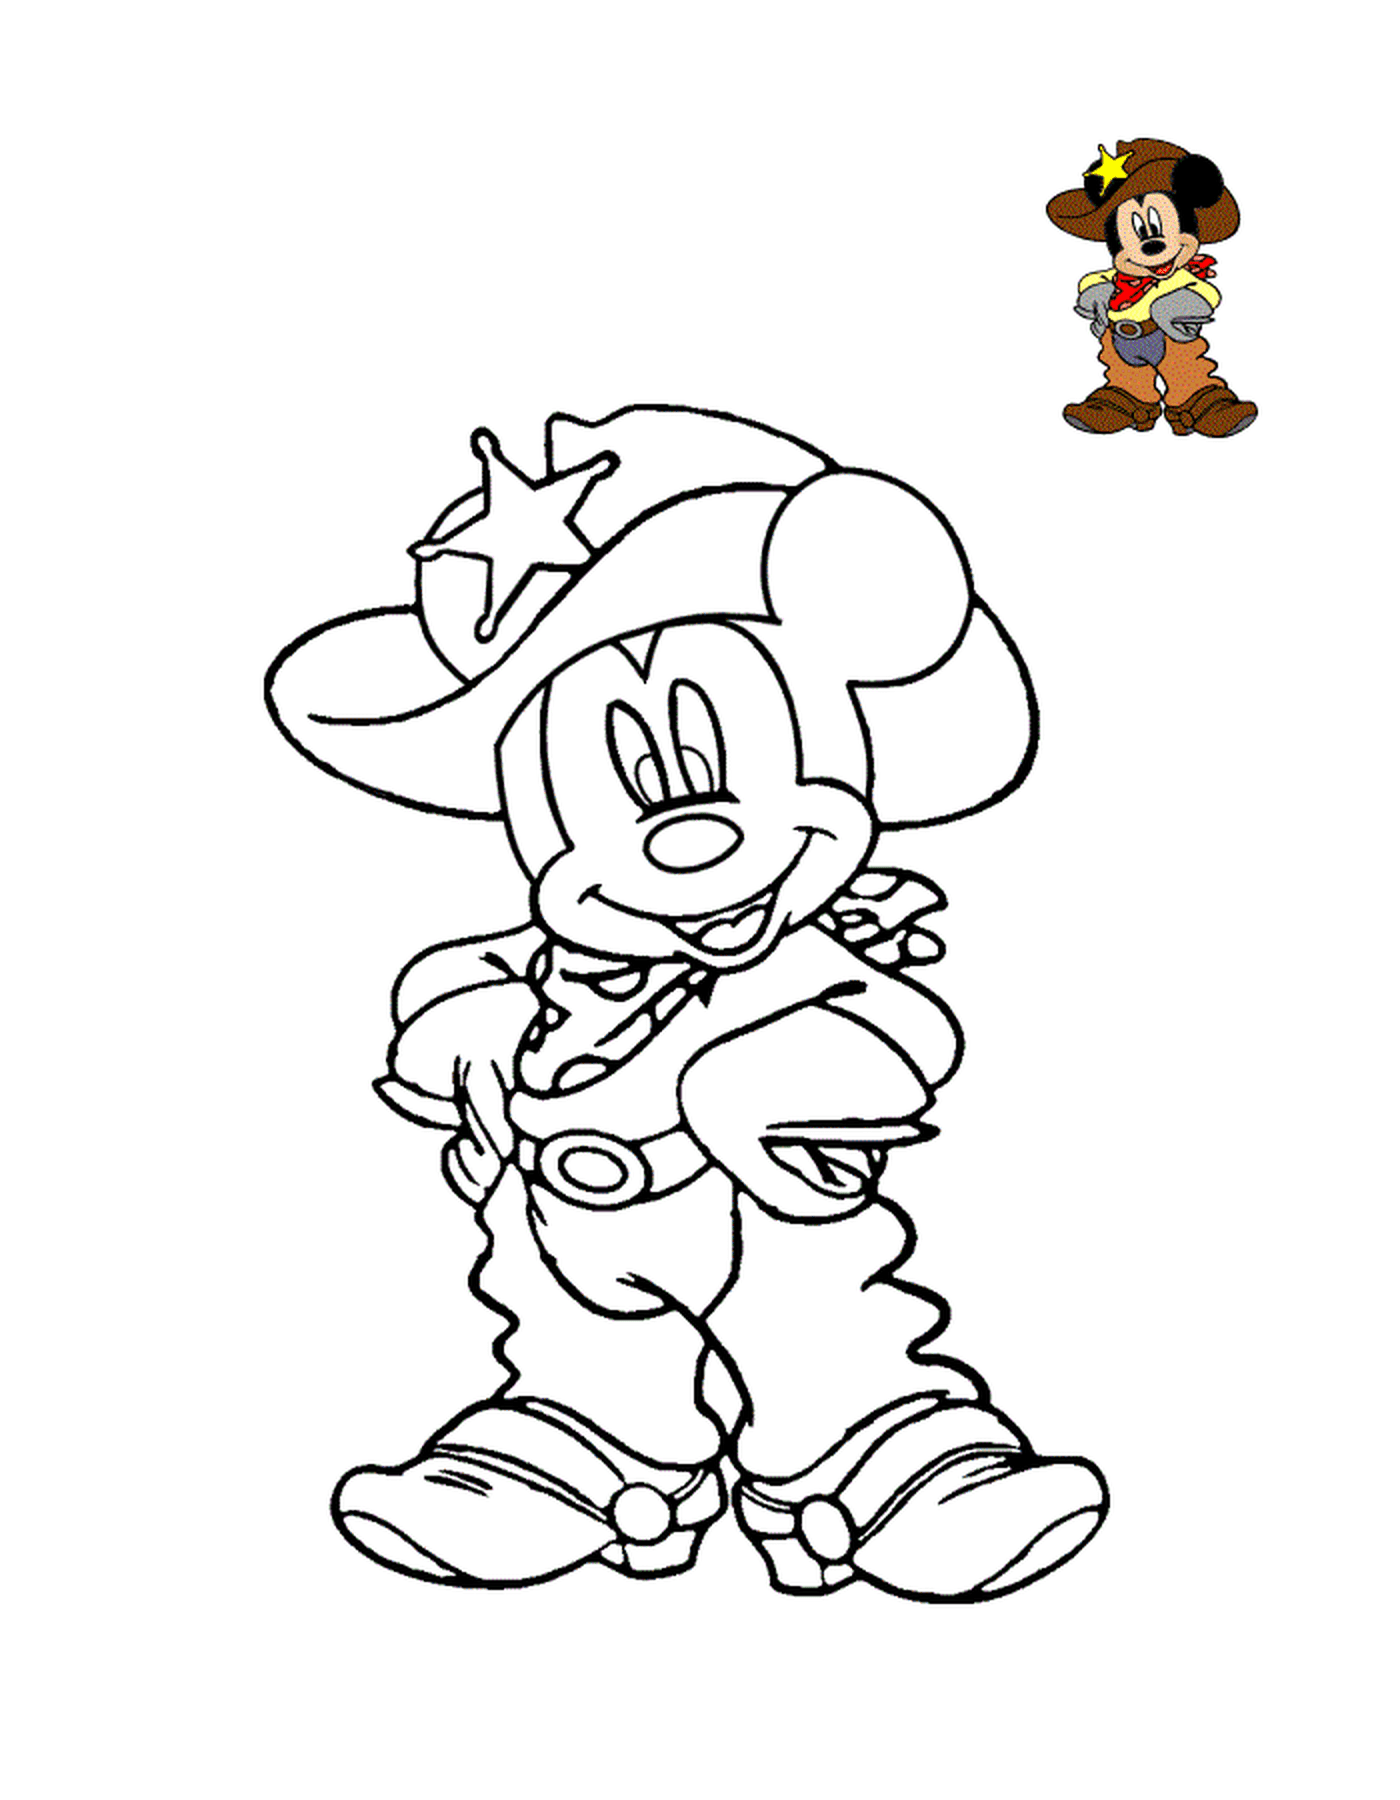  Mickey Mouse, der Cowboy Sheriff der Stadt 